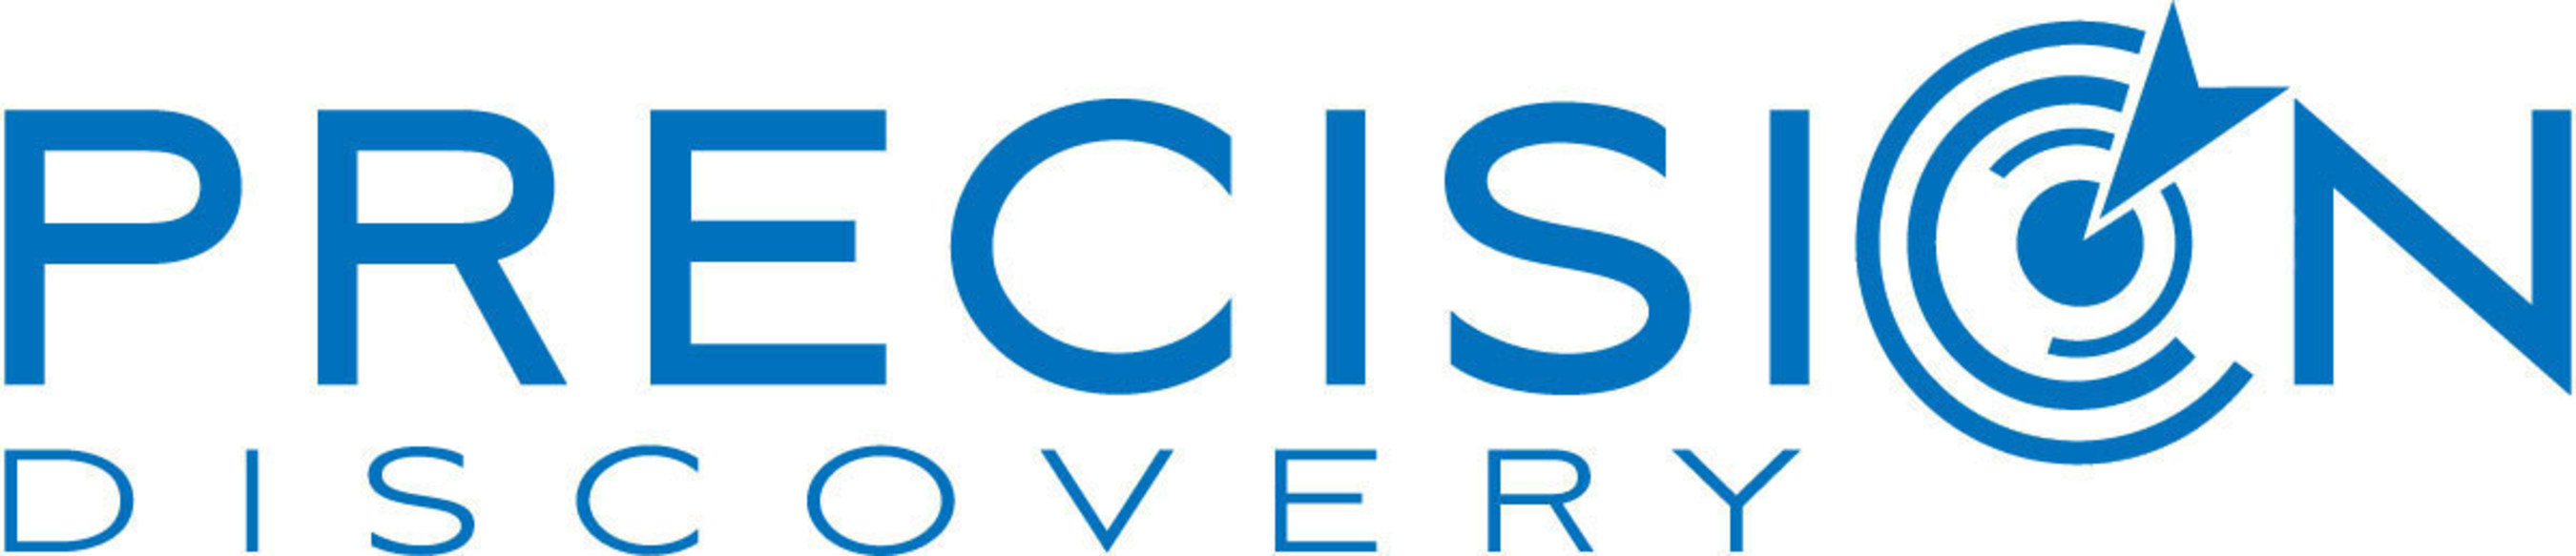 Precision Discovery, Inc. Logo